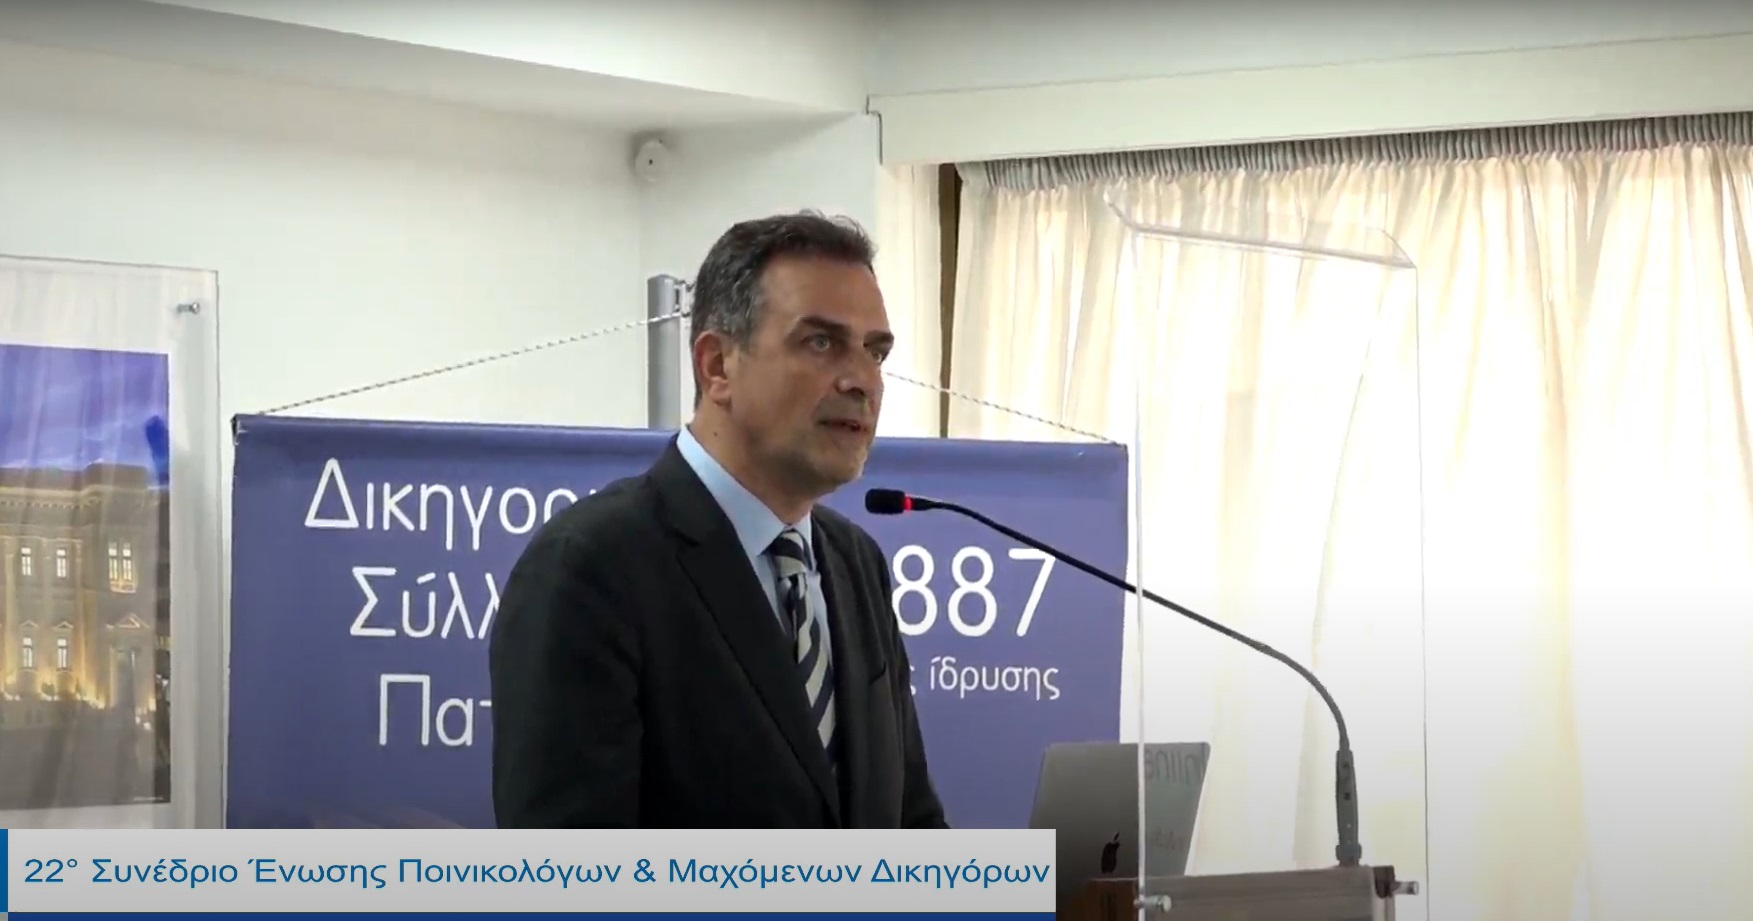 Πάτρα - Ό. Παπαδόπουλος από το Συνέδριο Ποινικολόγων: Η δήλωση Τσιόλα… ισχυρό “χαρτί” για την Πισπιρίγκου (βίντεο)